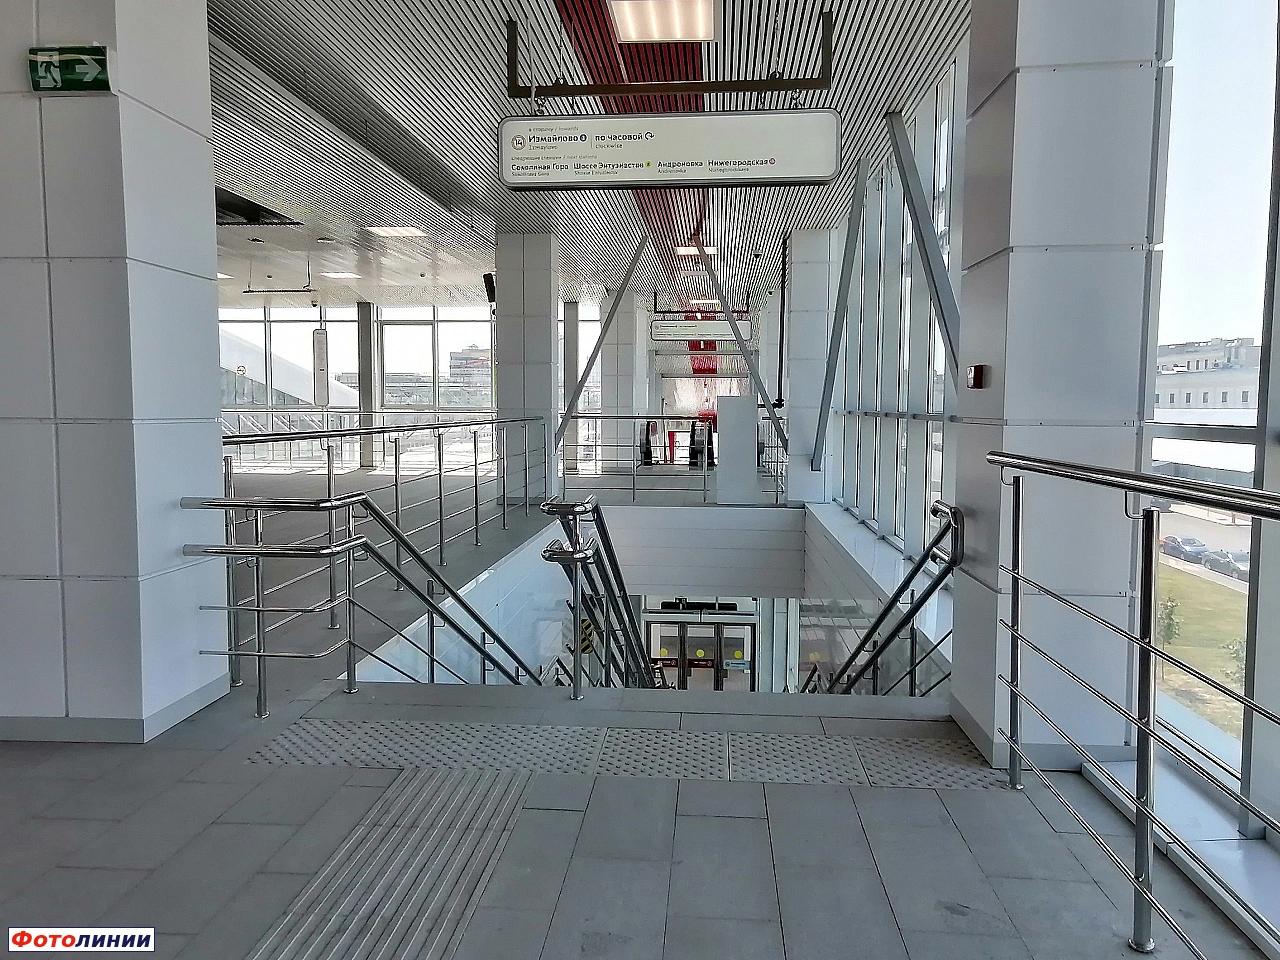 Интерьер северного вестибюля, спуск к платформе в сторону о.п. Измайлово